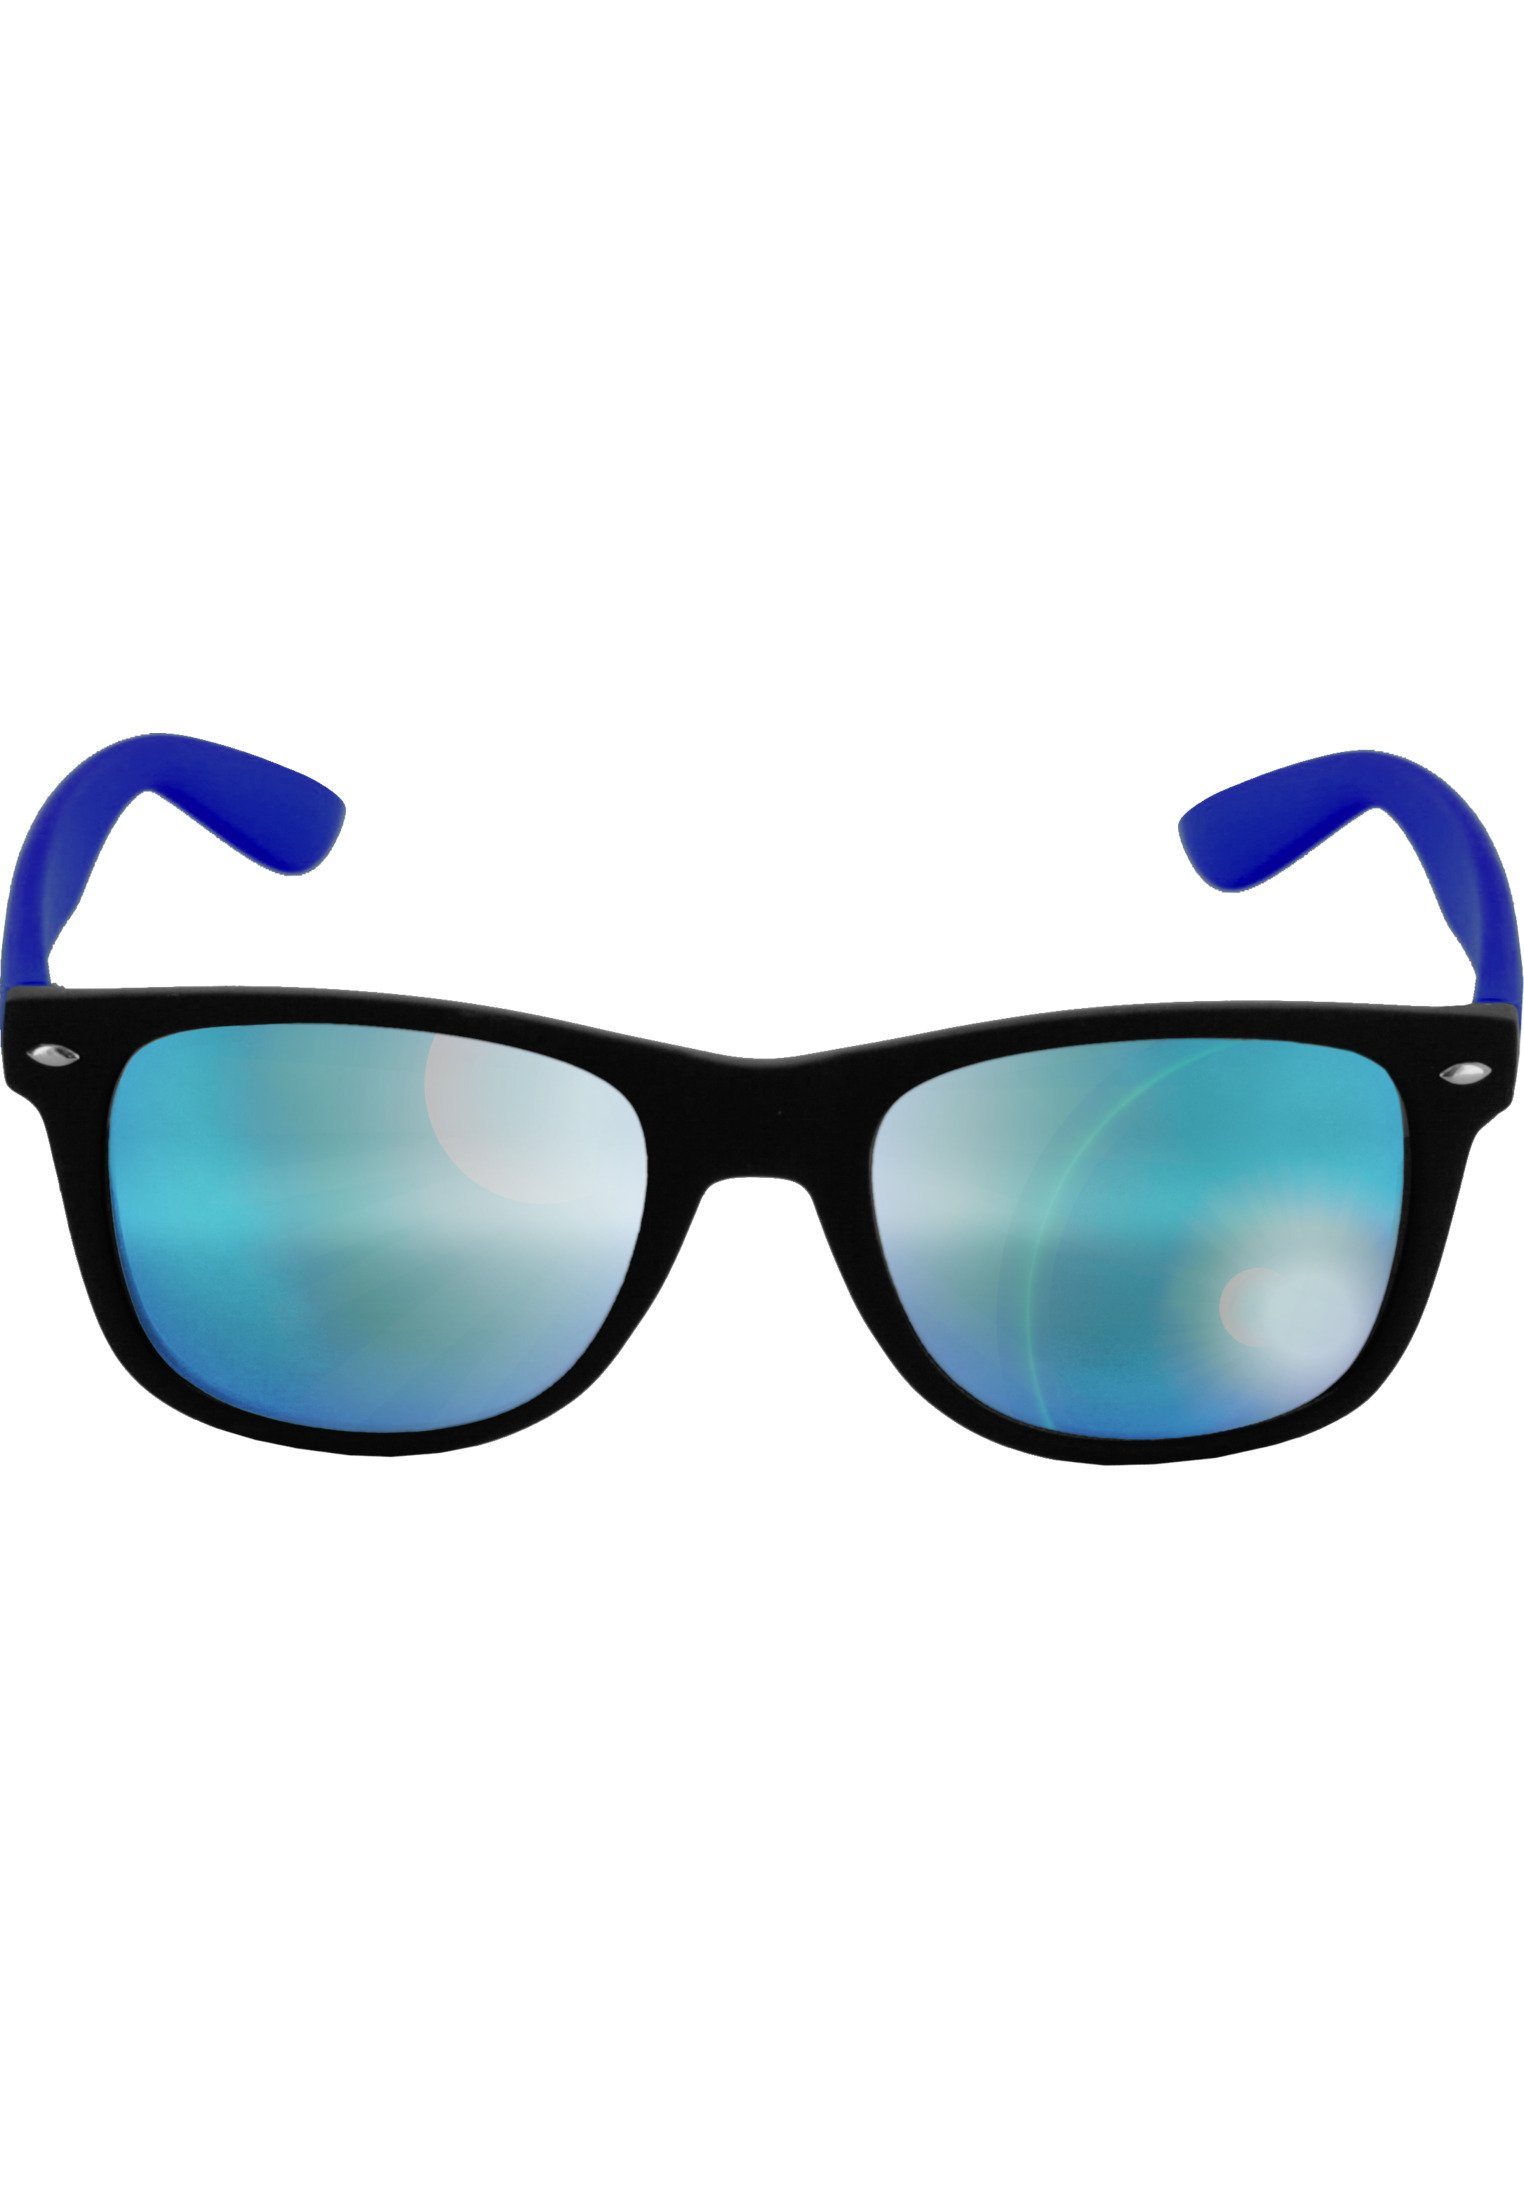 MSTRDS Sonnenbrille Accessoires Sunglasses Likoma Mirror blk/royal/blue | Sonnenbrillen